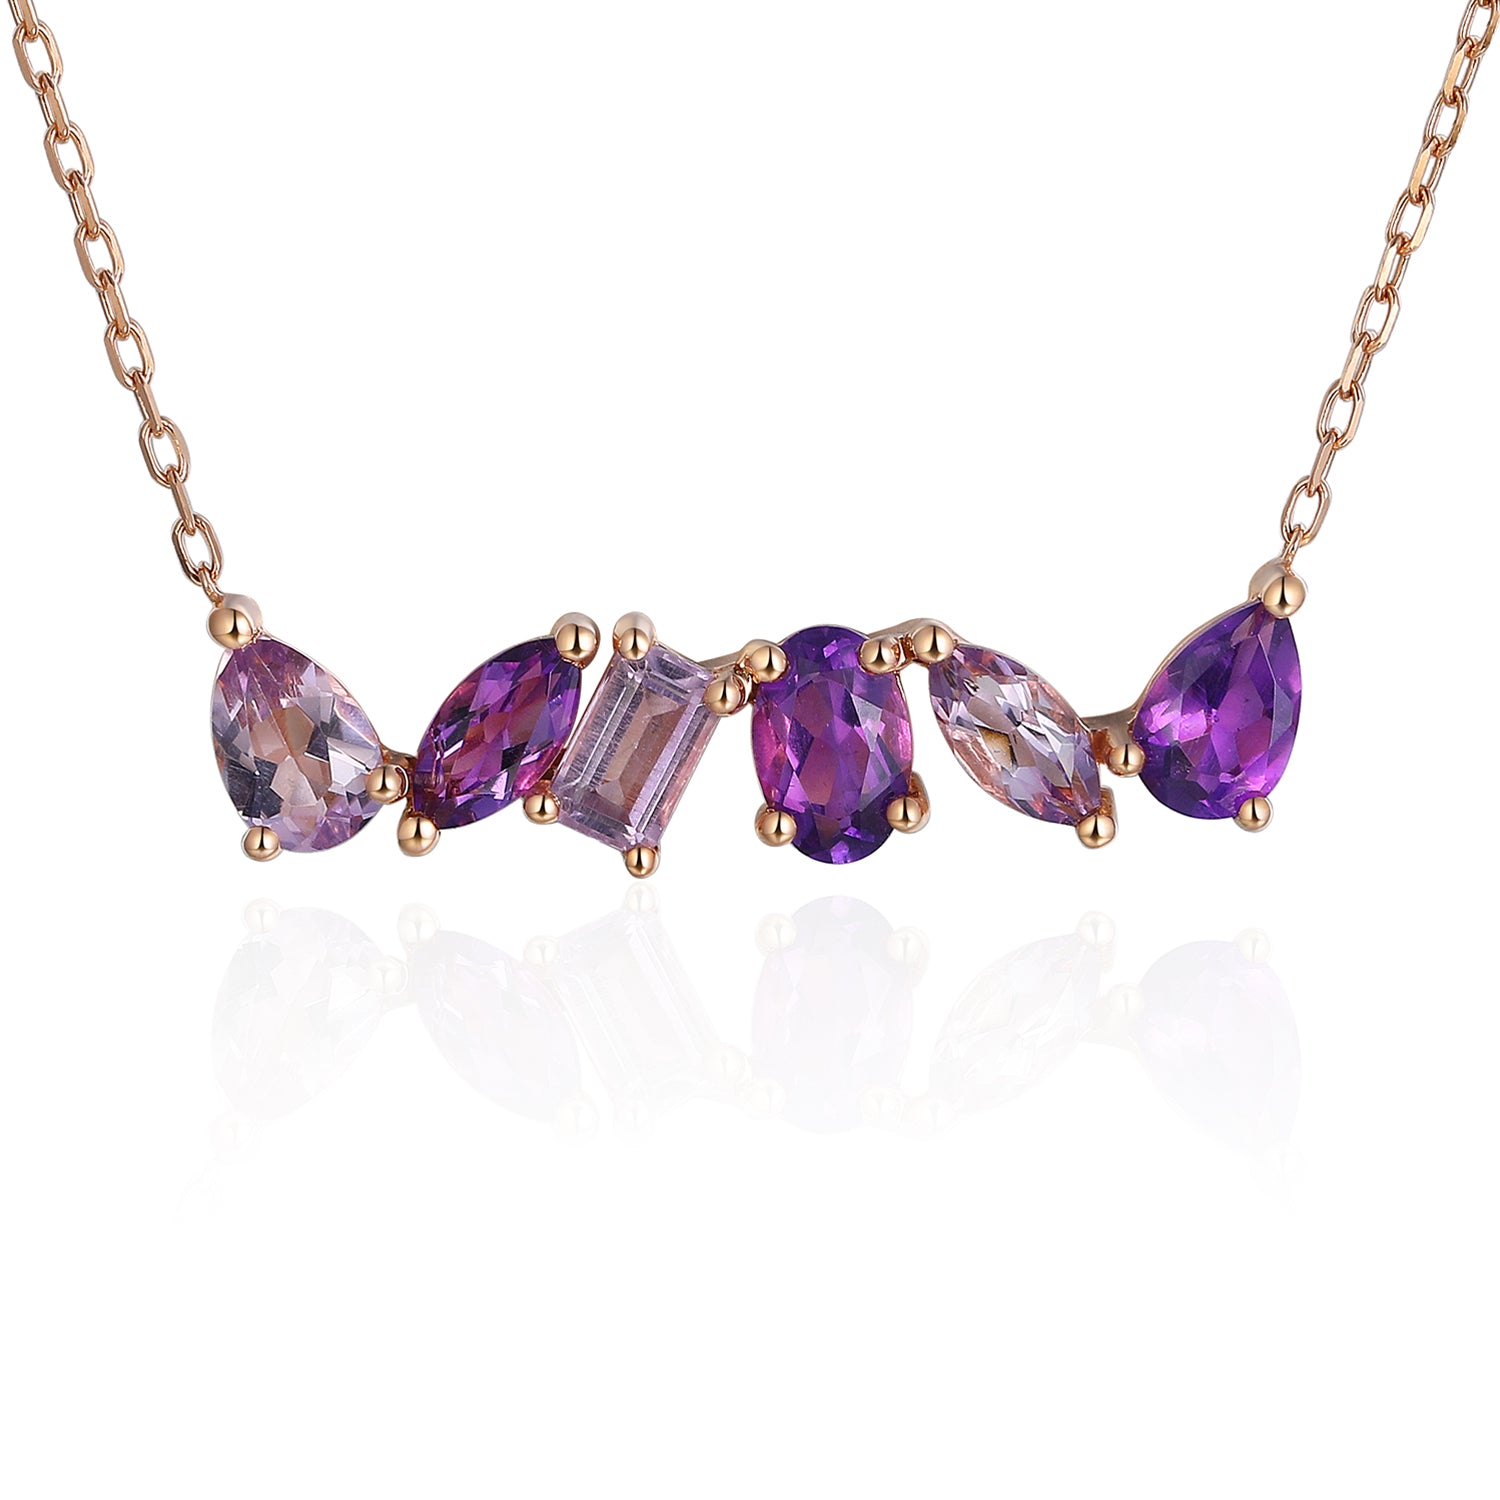 Multistone Mixed Gemstone Necklace